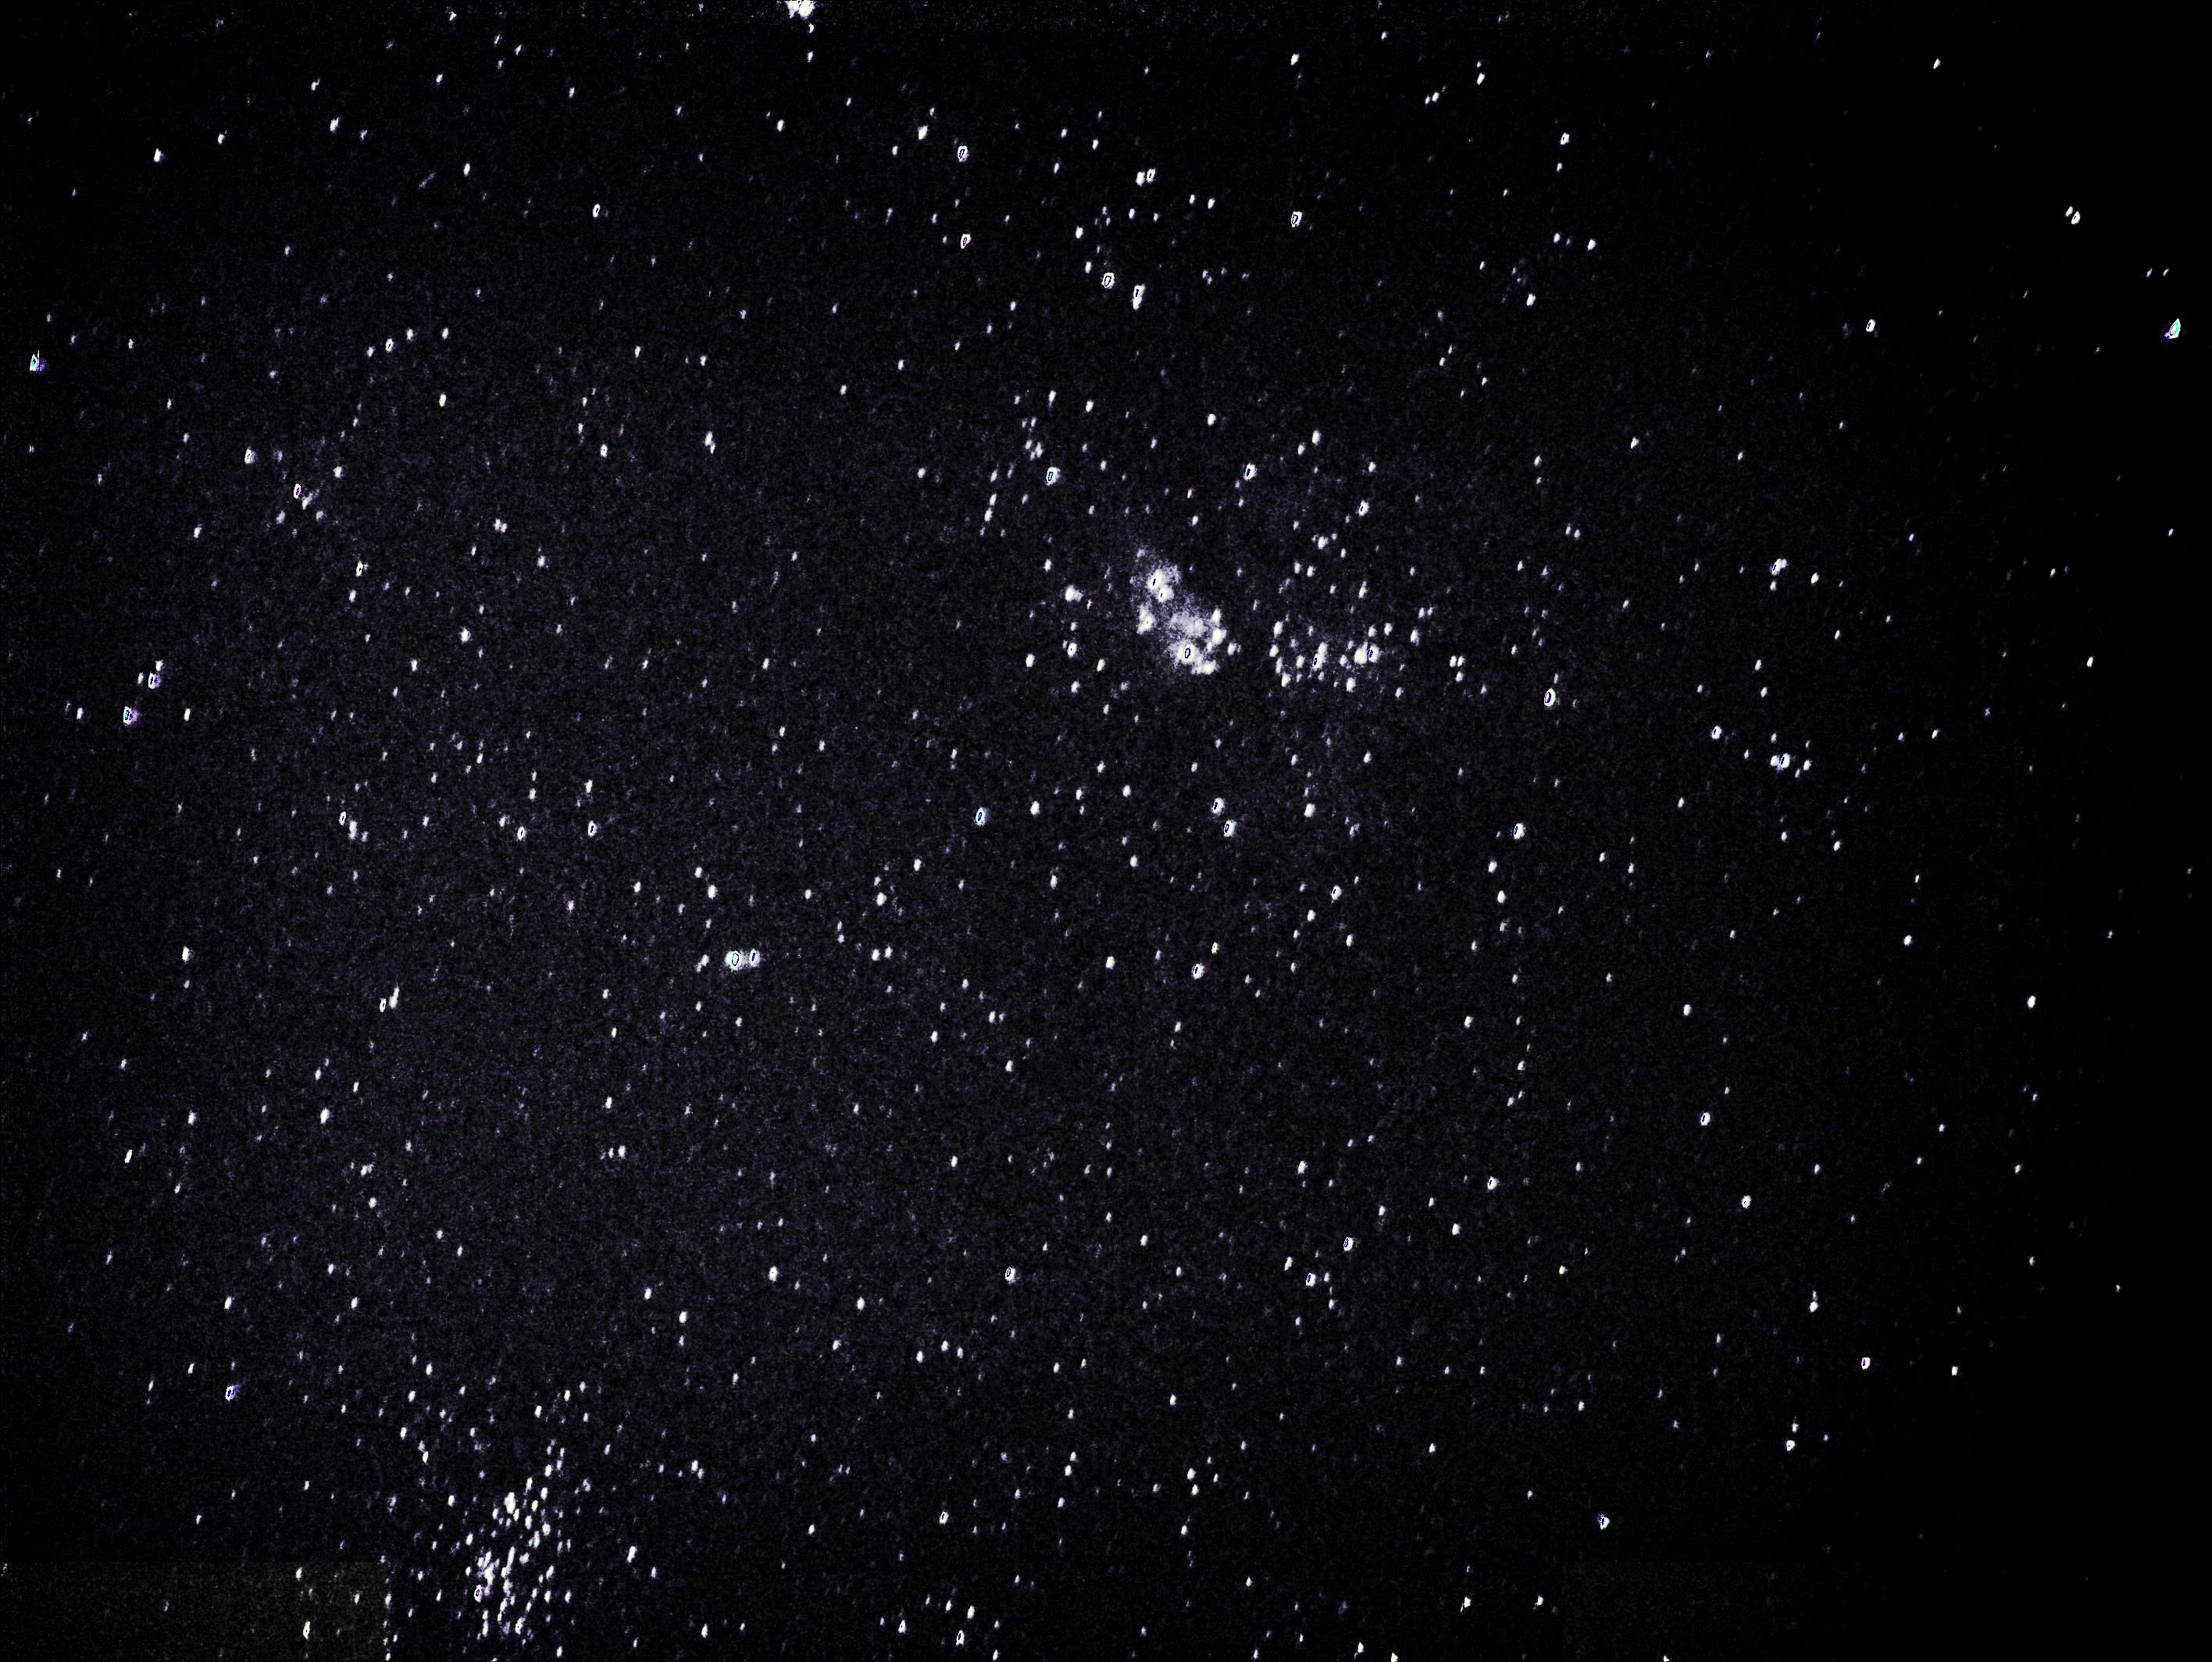 carinae.JPG.5ddadef99a64ff17f239a3ad8b1d